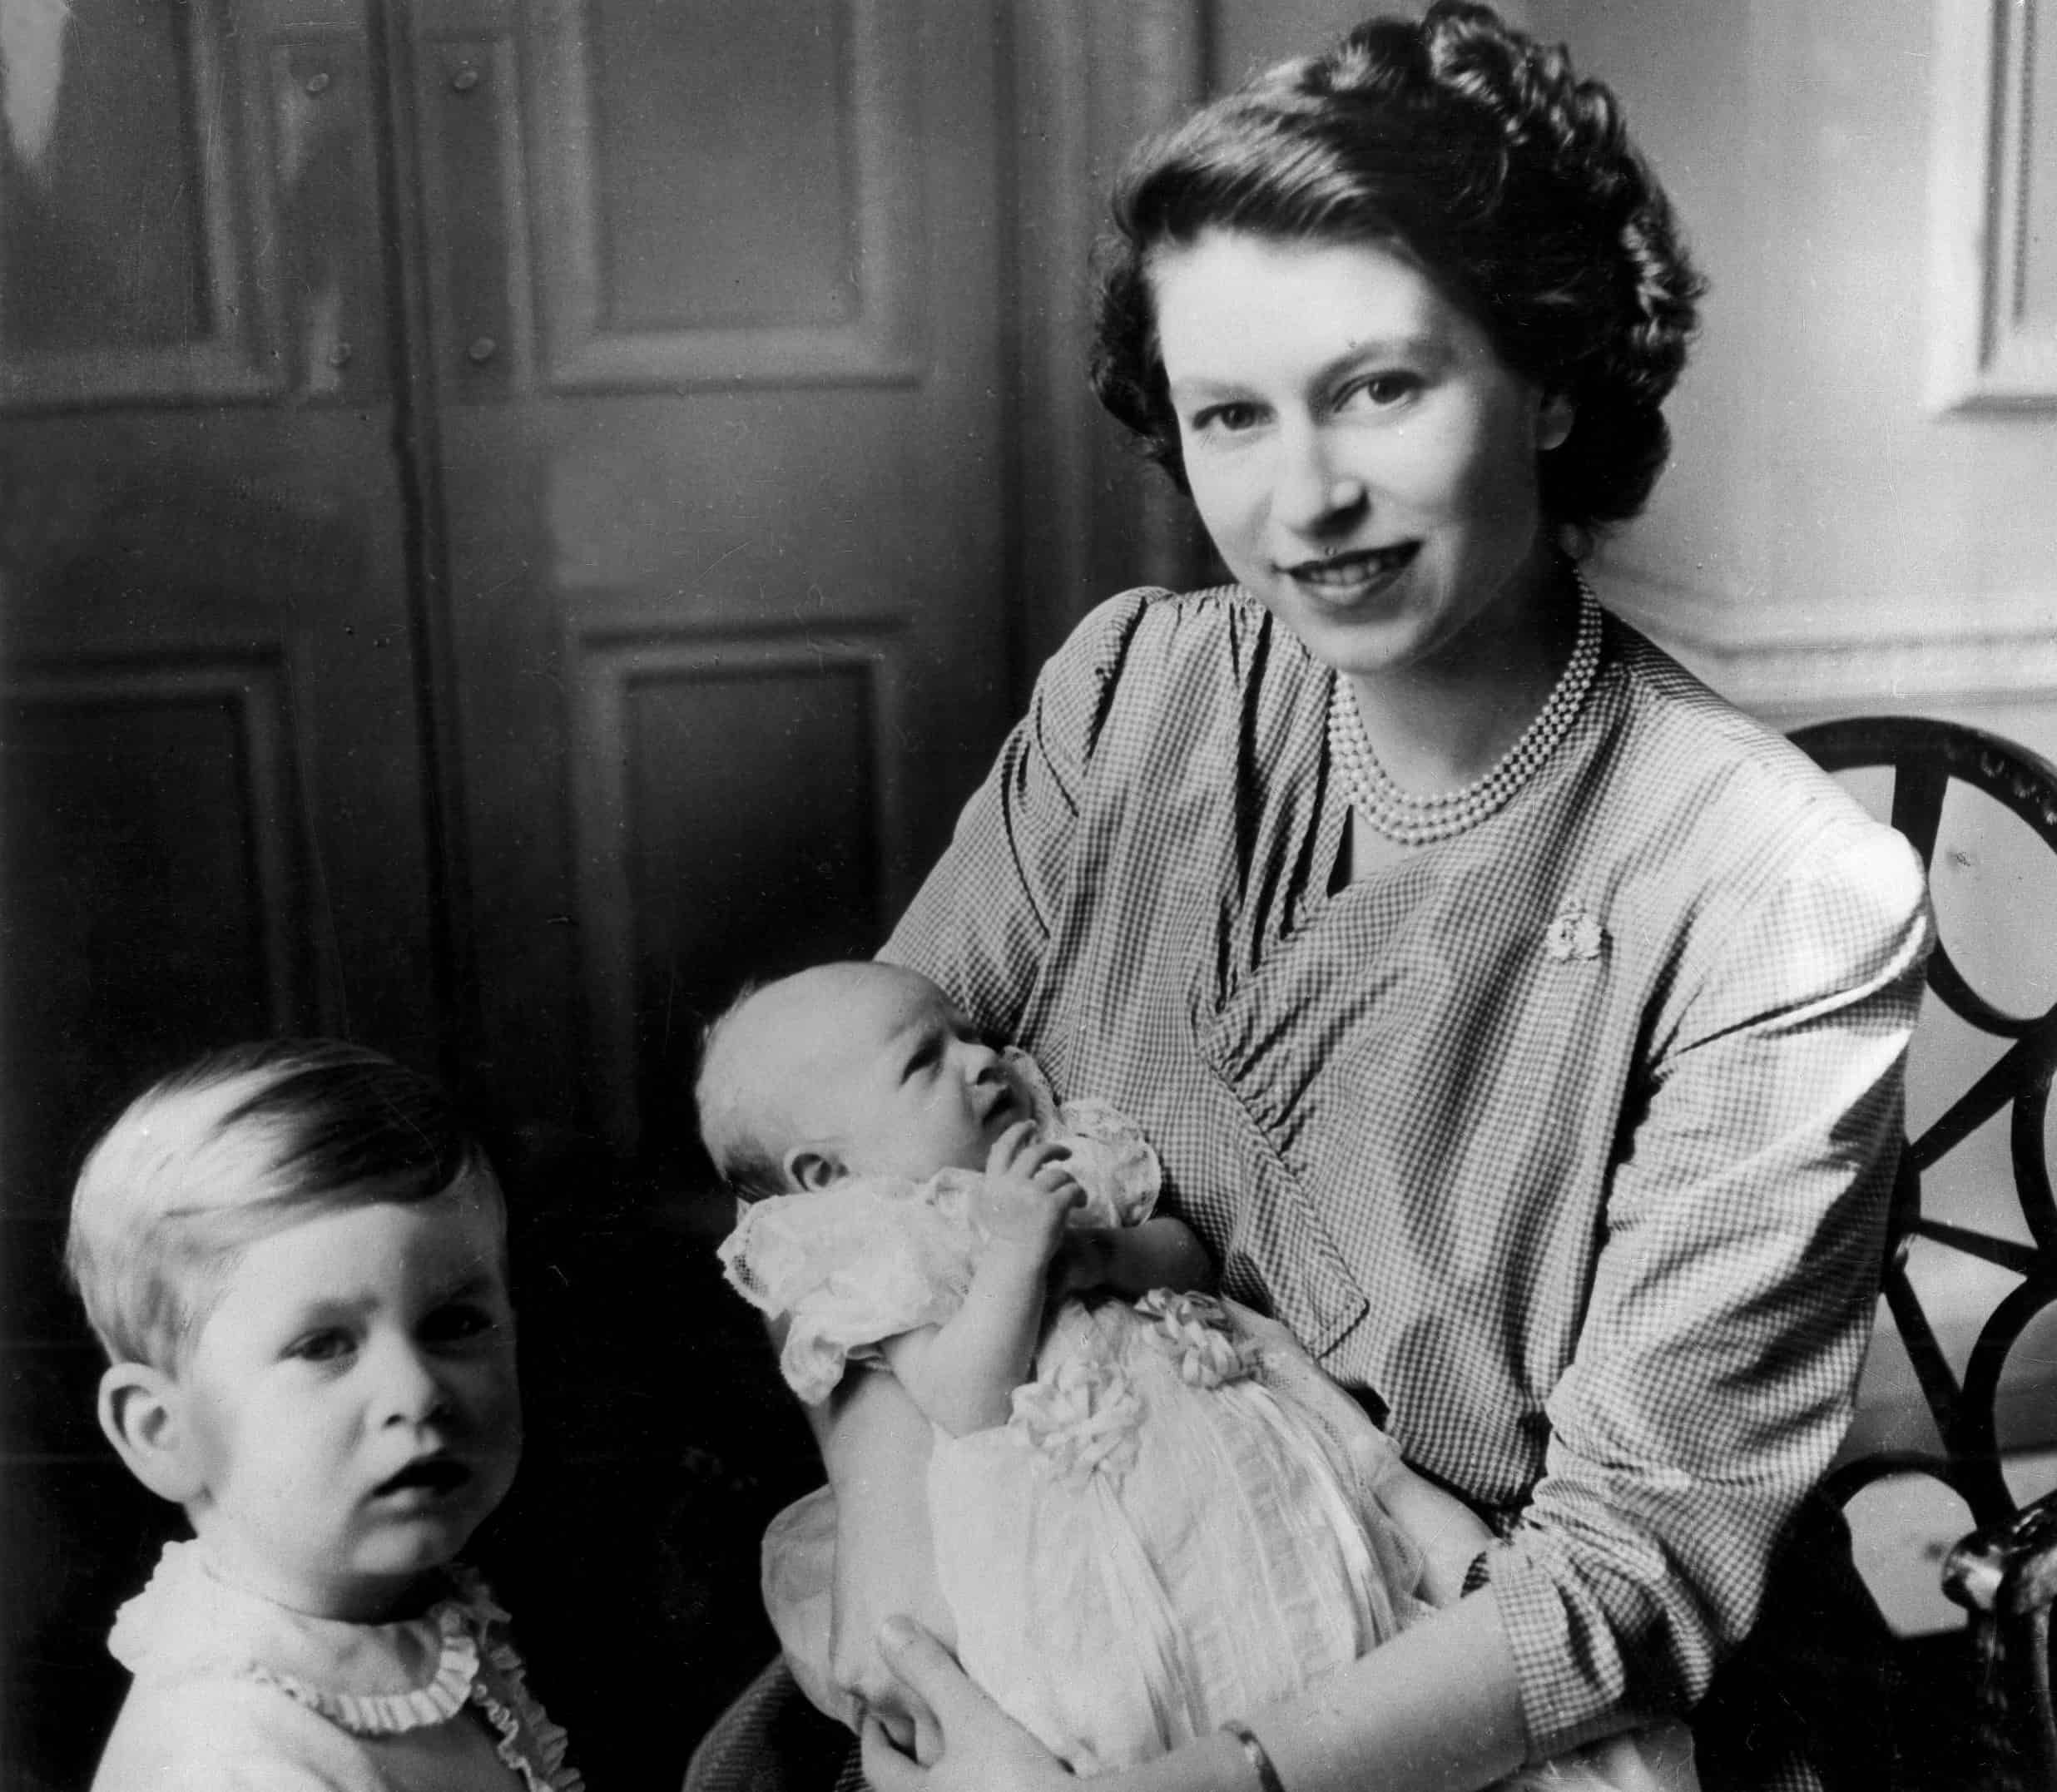 LONDRES, 15/09/50.- La Princesa Isabel de Inglaterra, Duquesa de Edimburgo, con sus dos hijos, el Príncipe Carlos y la pequeña Princesa Ana en brazos, nacida 15 de agosto en Clerence House, residencia de la princesa y su marido.